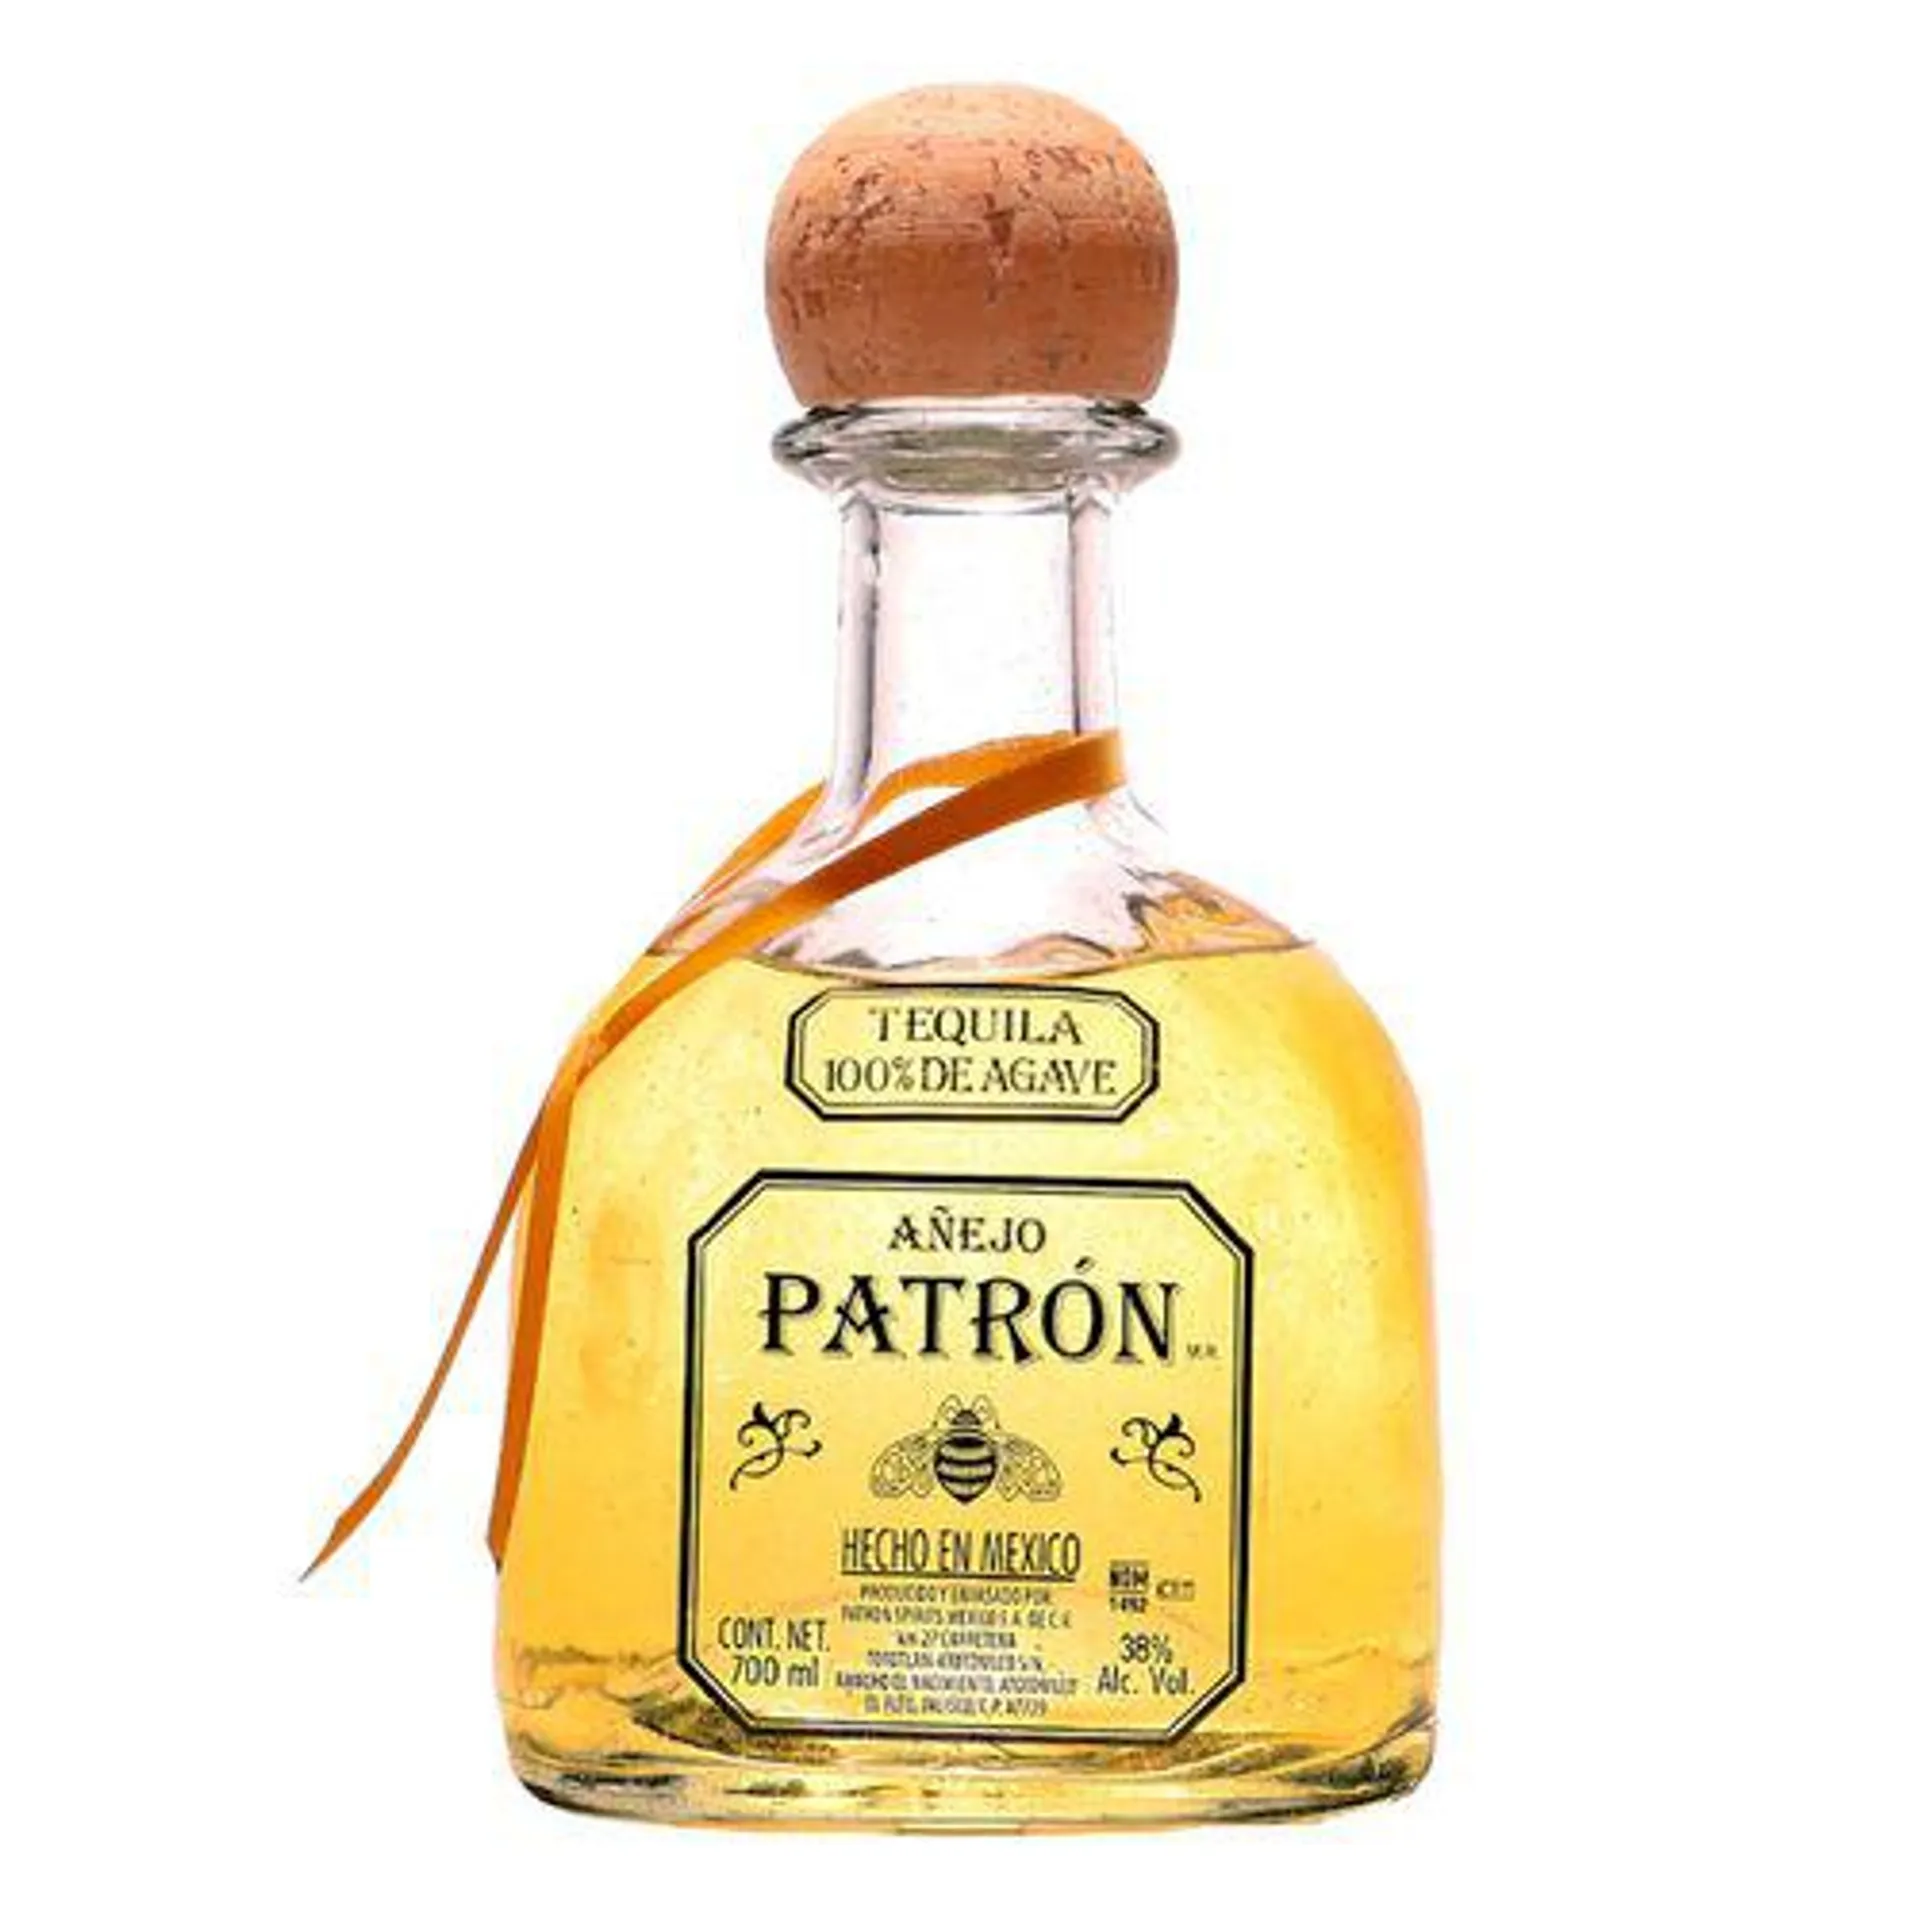 Tequila Patrón Añejo 700ml